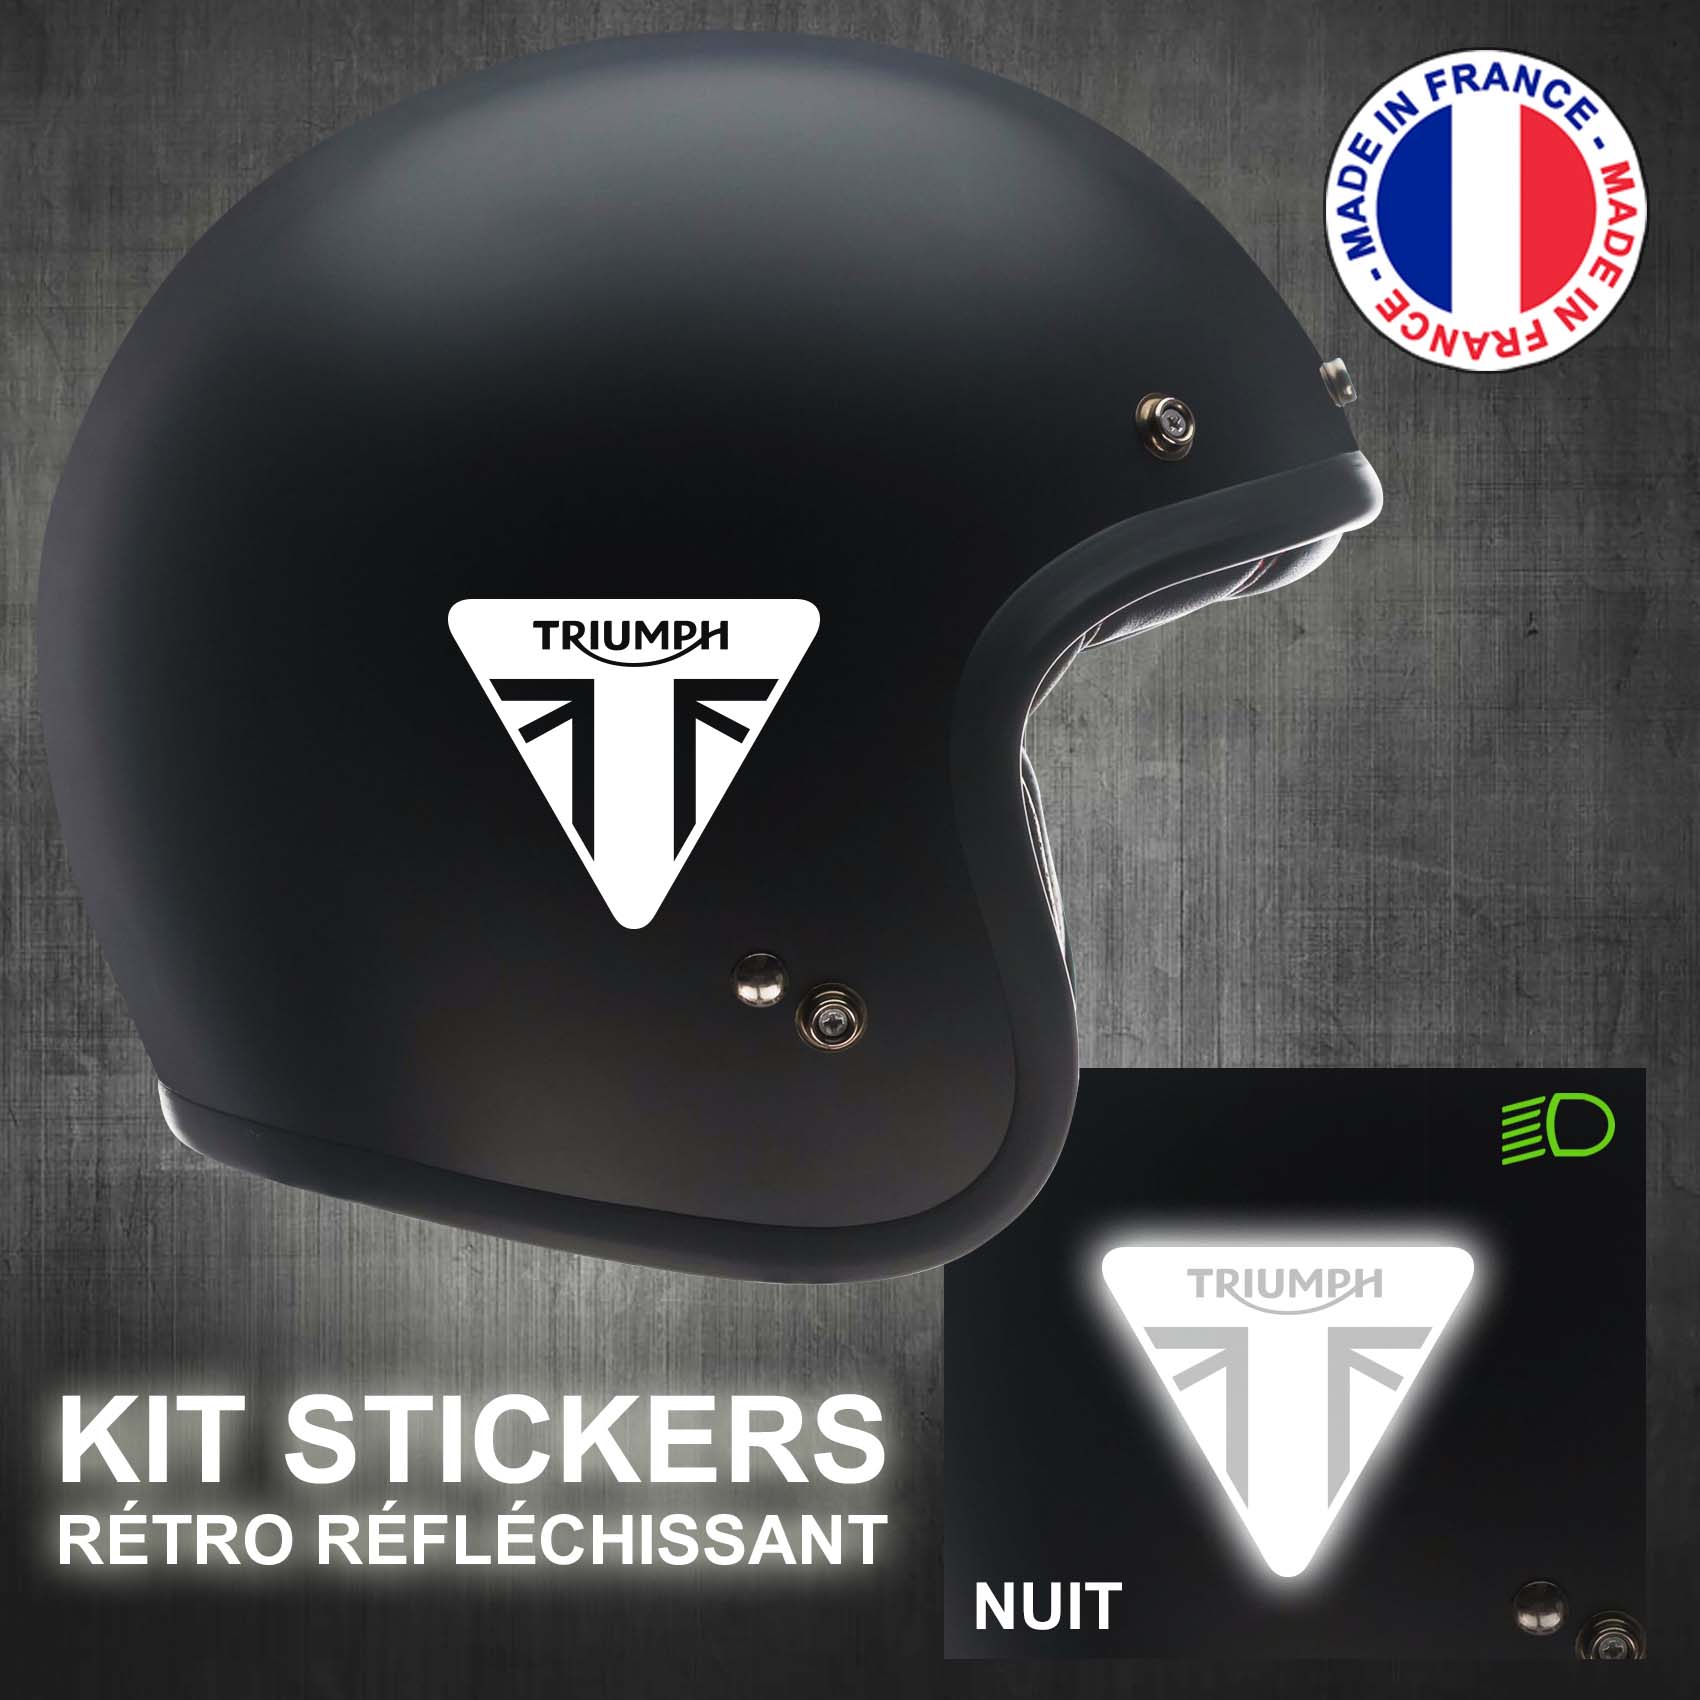 Kit de 18 stickers noir adhésifs réfléchissants pour signalisation sur casque 